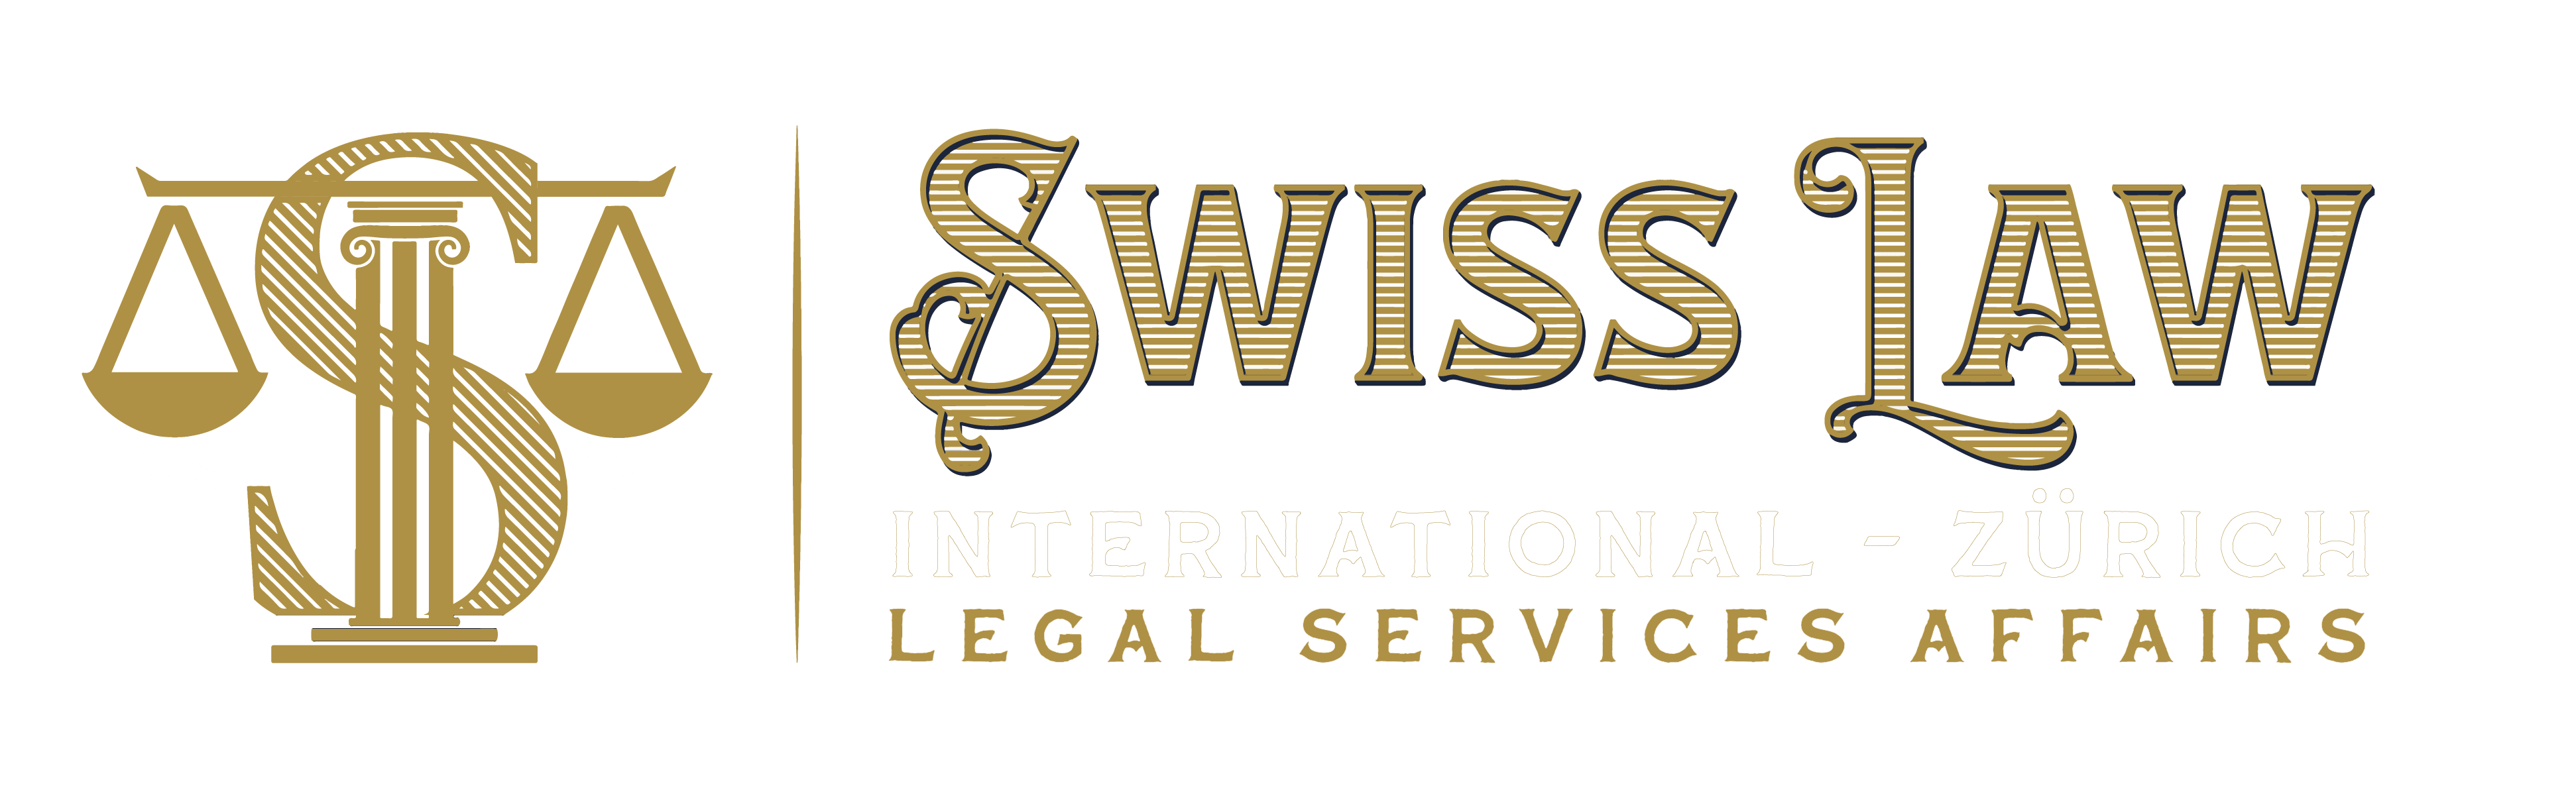 nuovi formati logo diritto svizzero-09